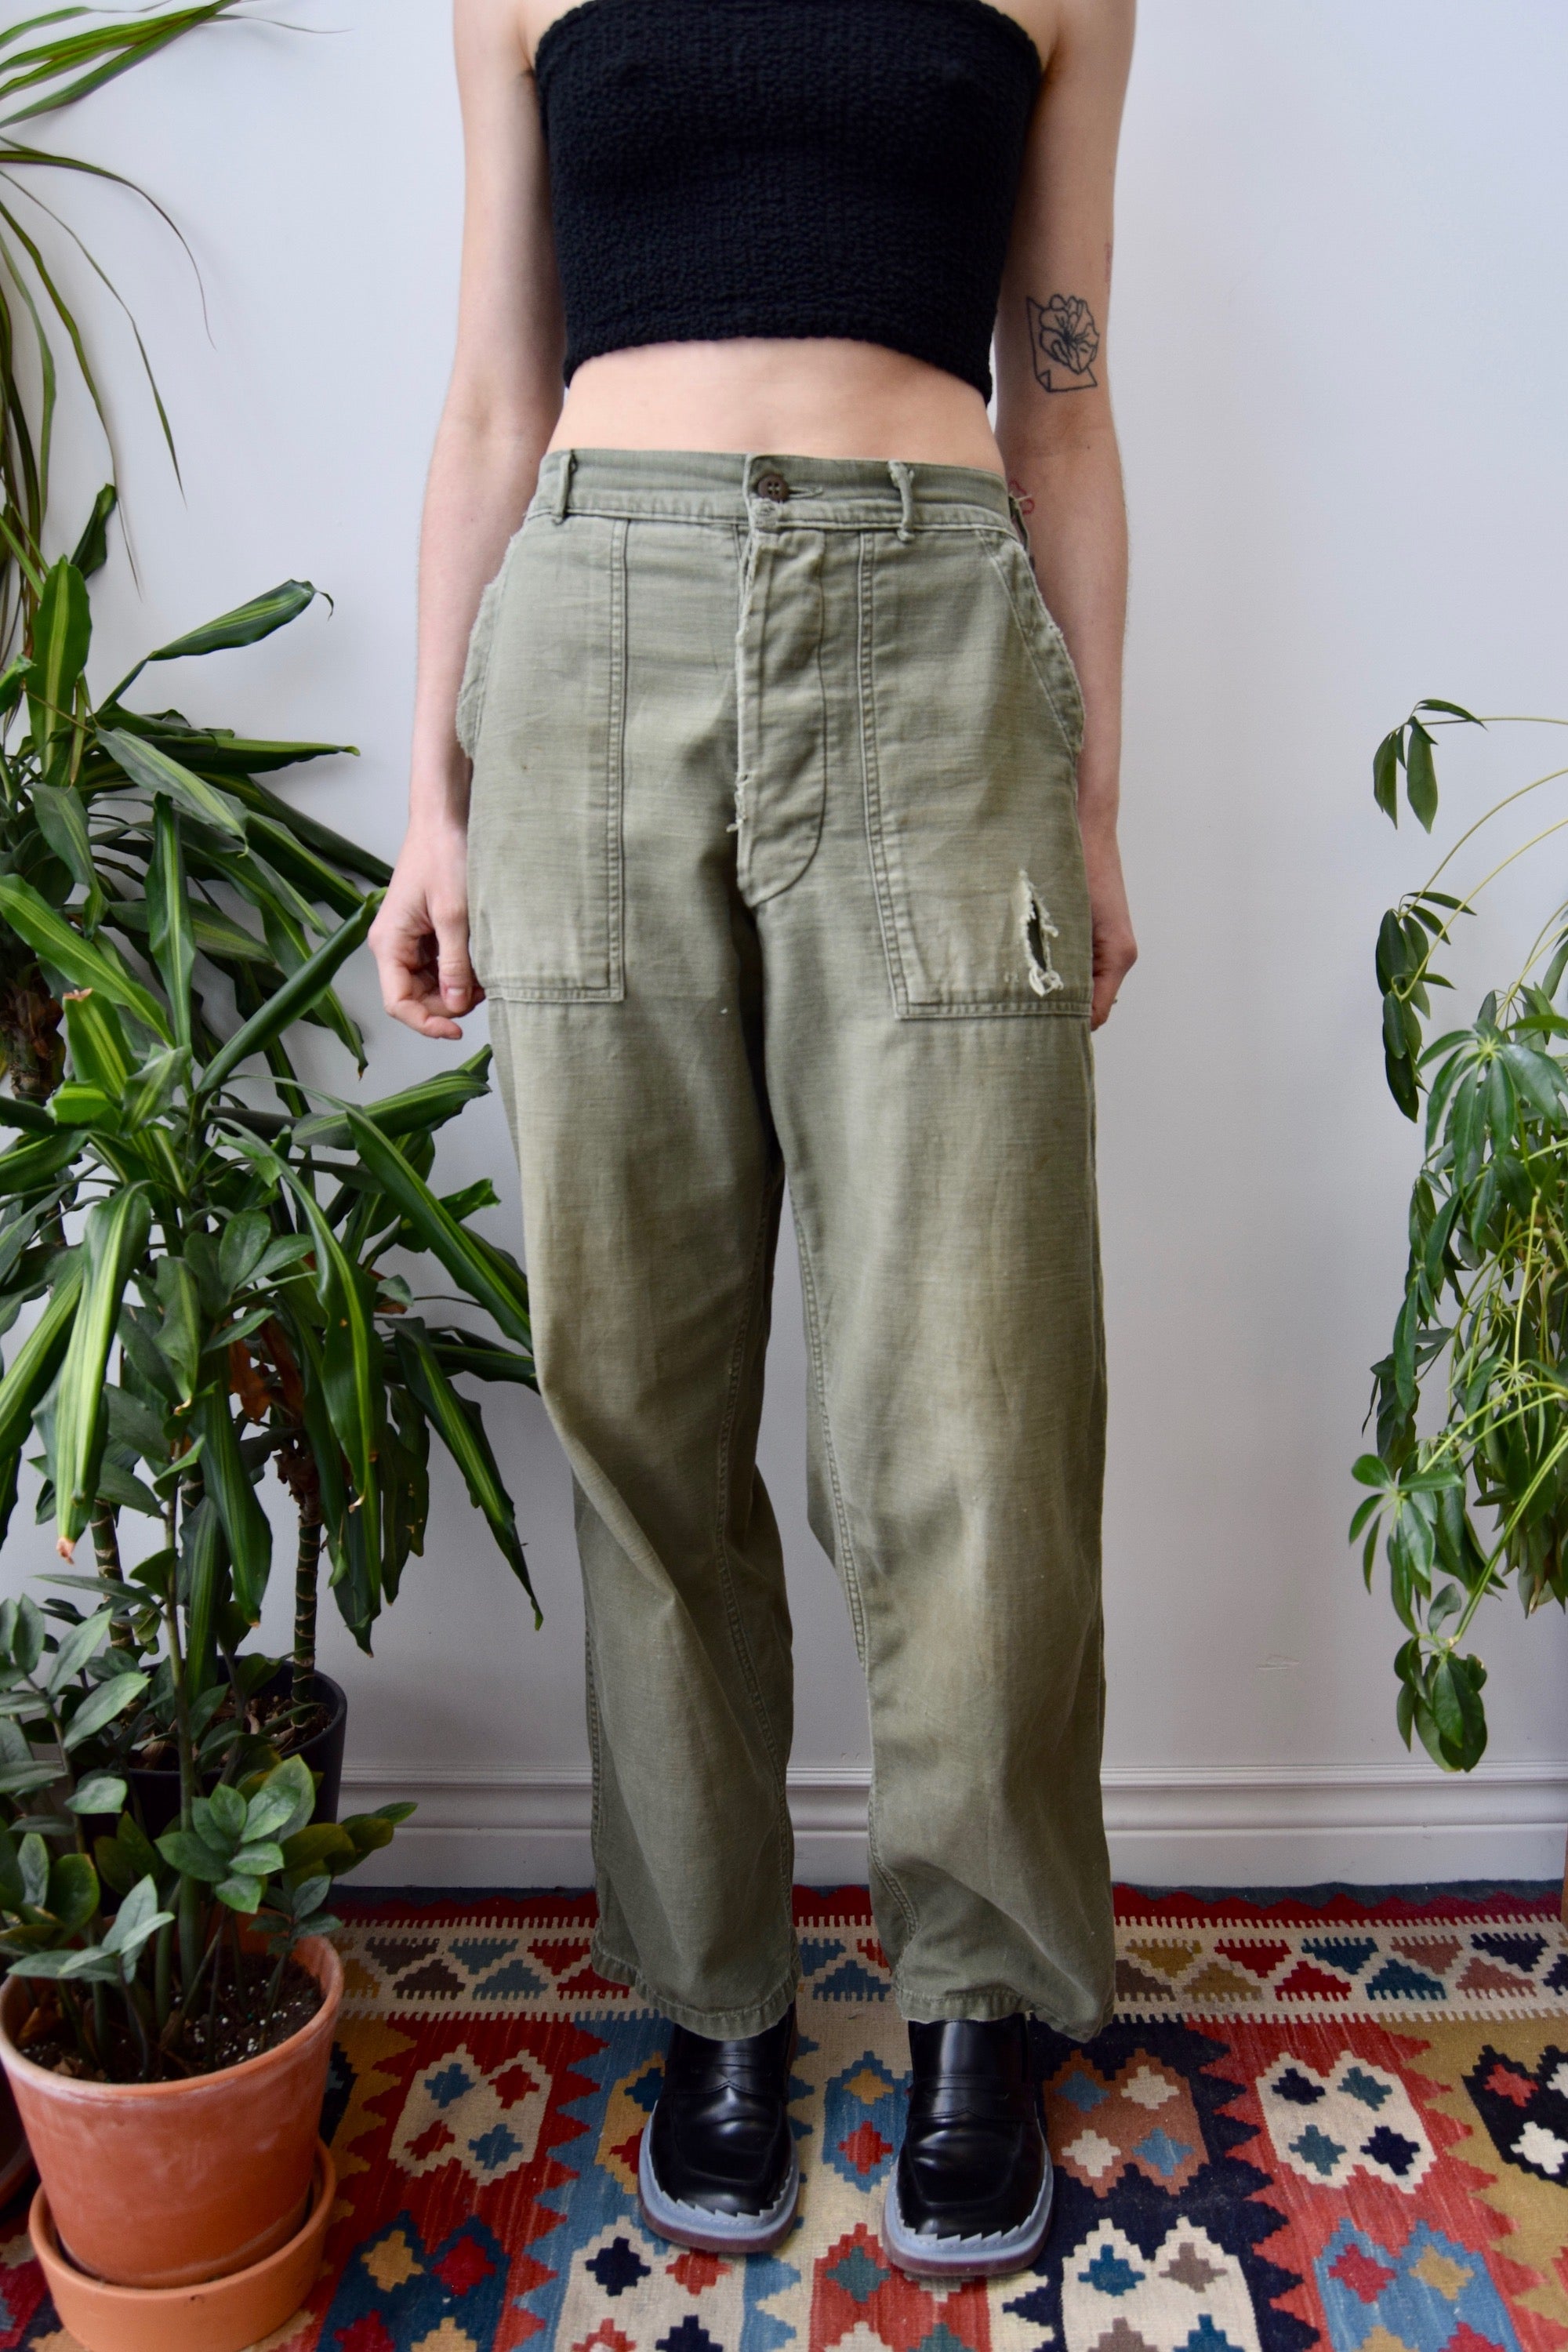 Worn Vintage Army Pants